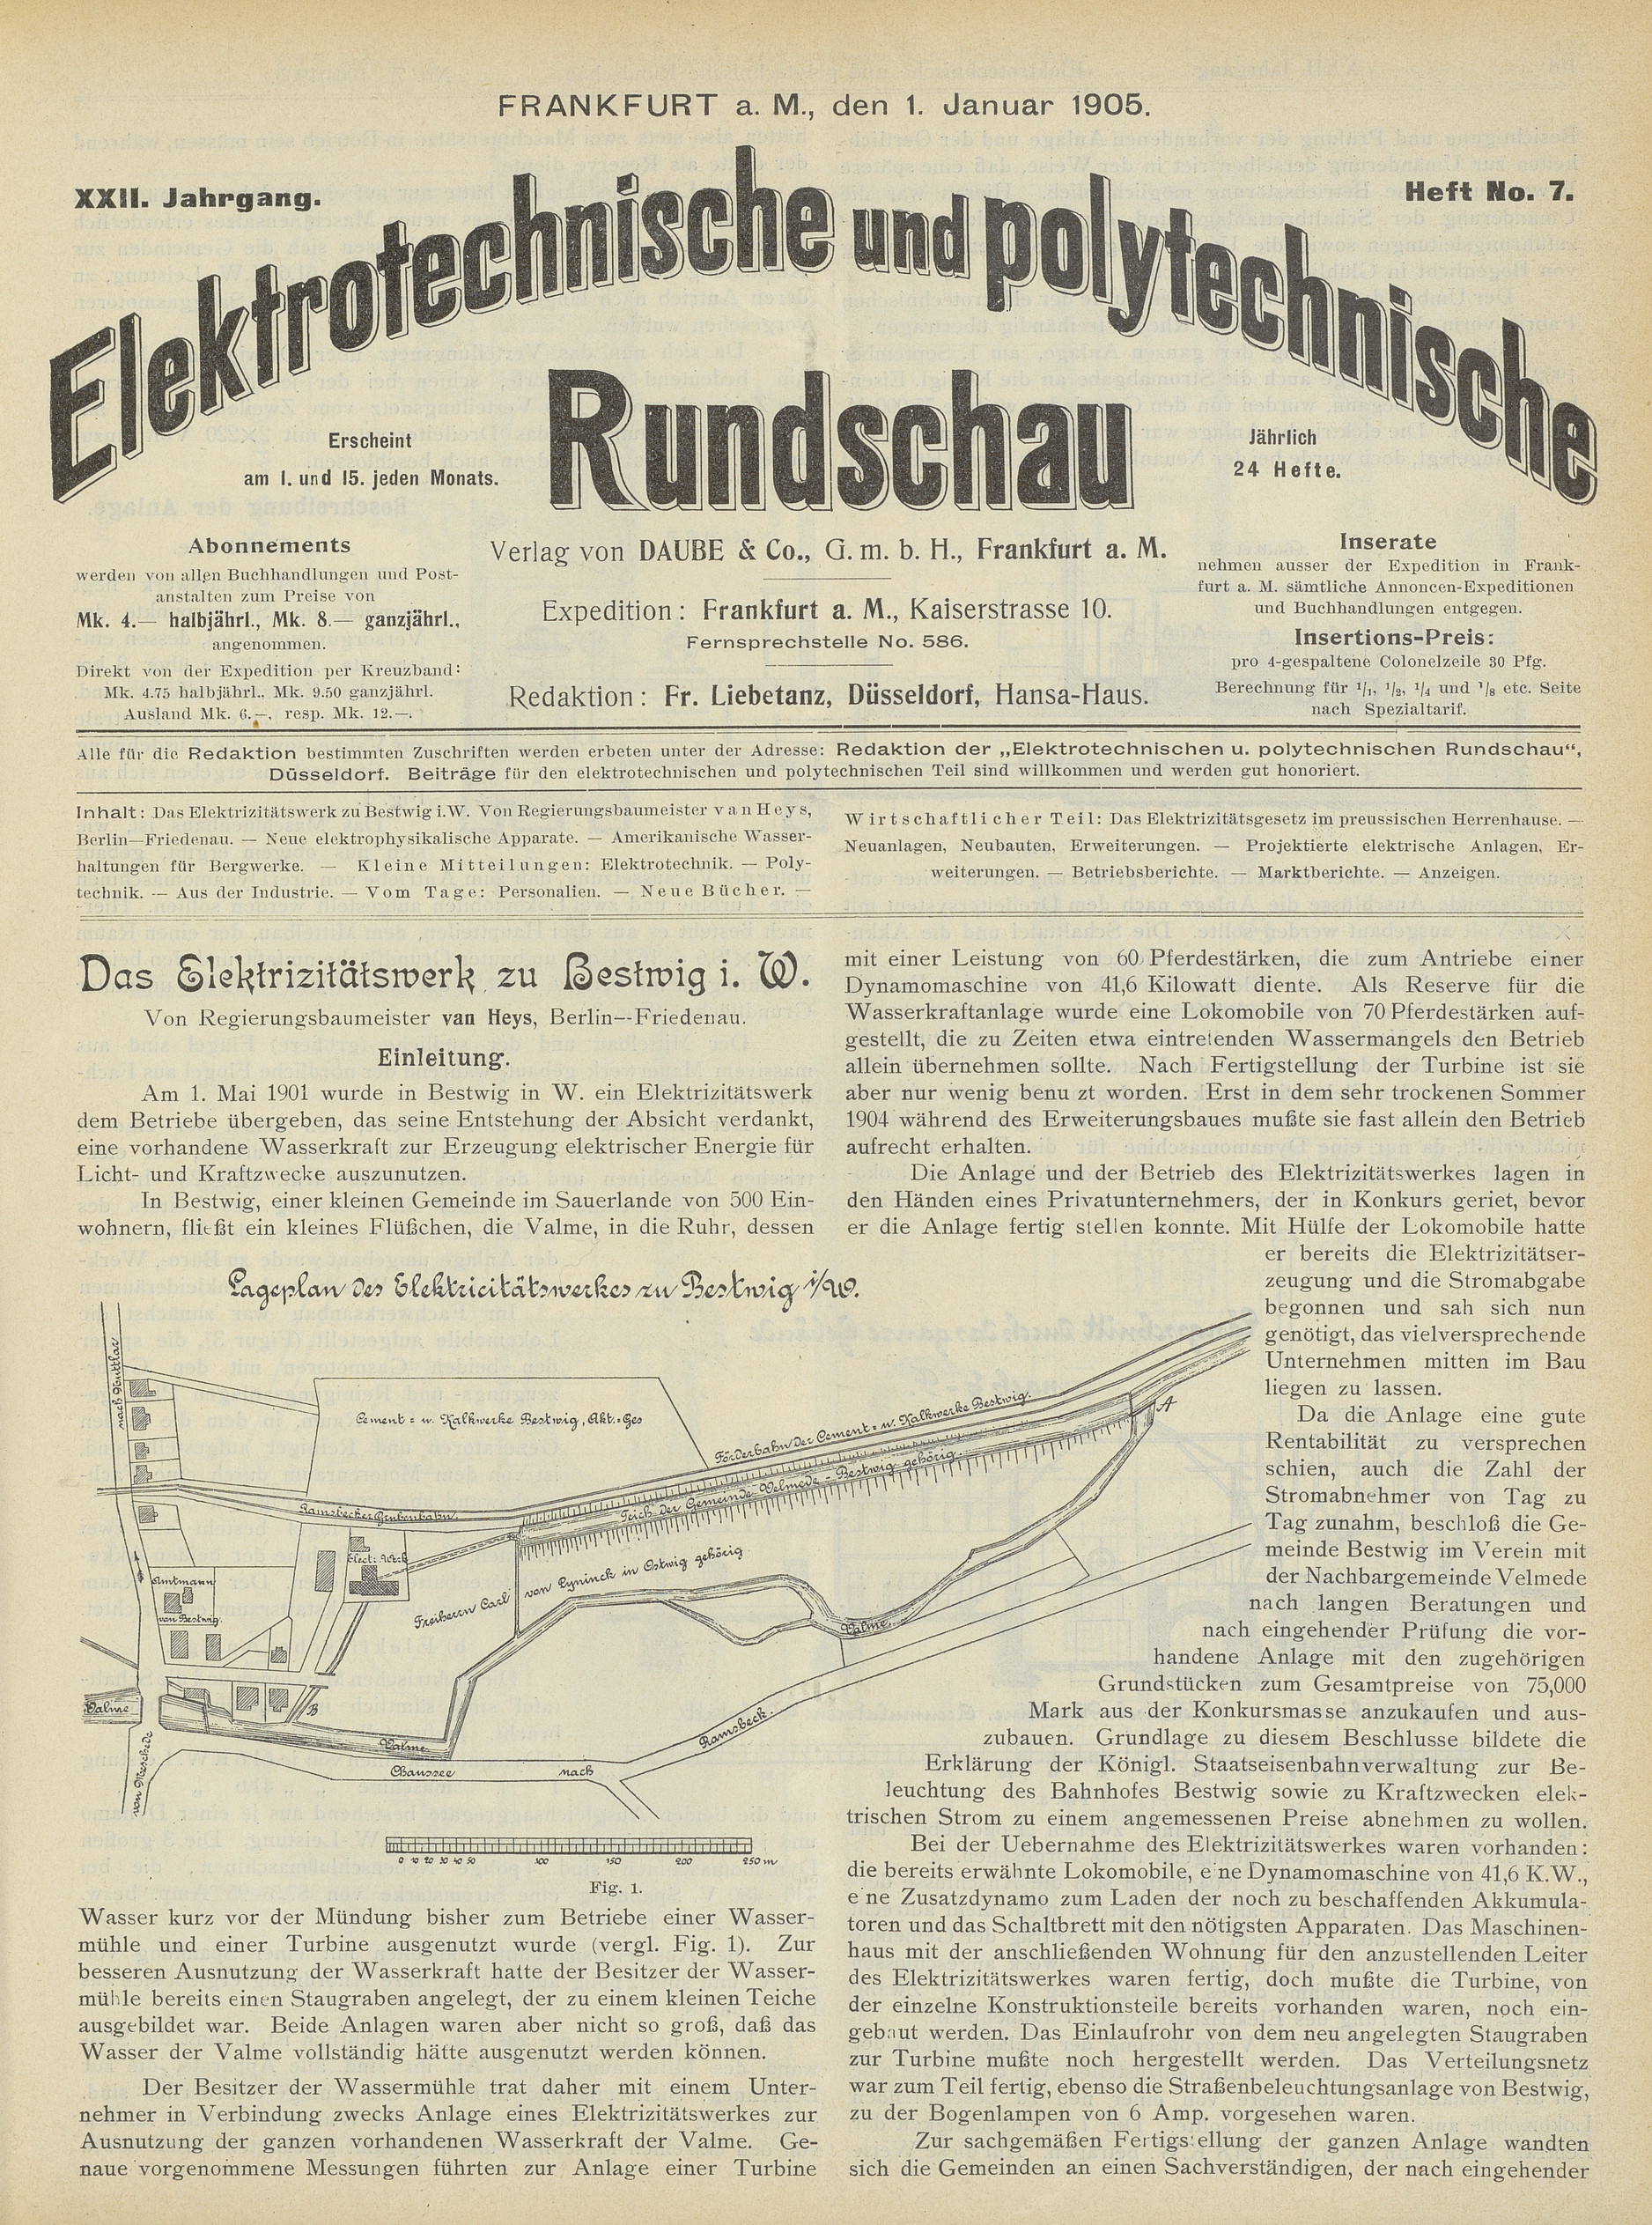 Elektrotechnische und polytechnische Rundschau, XXII. Jahrgang, Heft No. 7